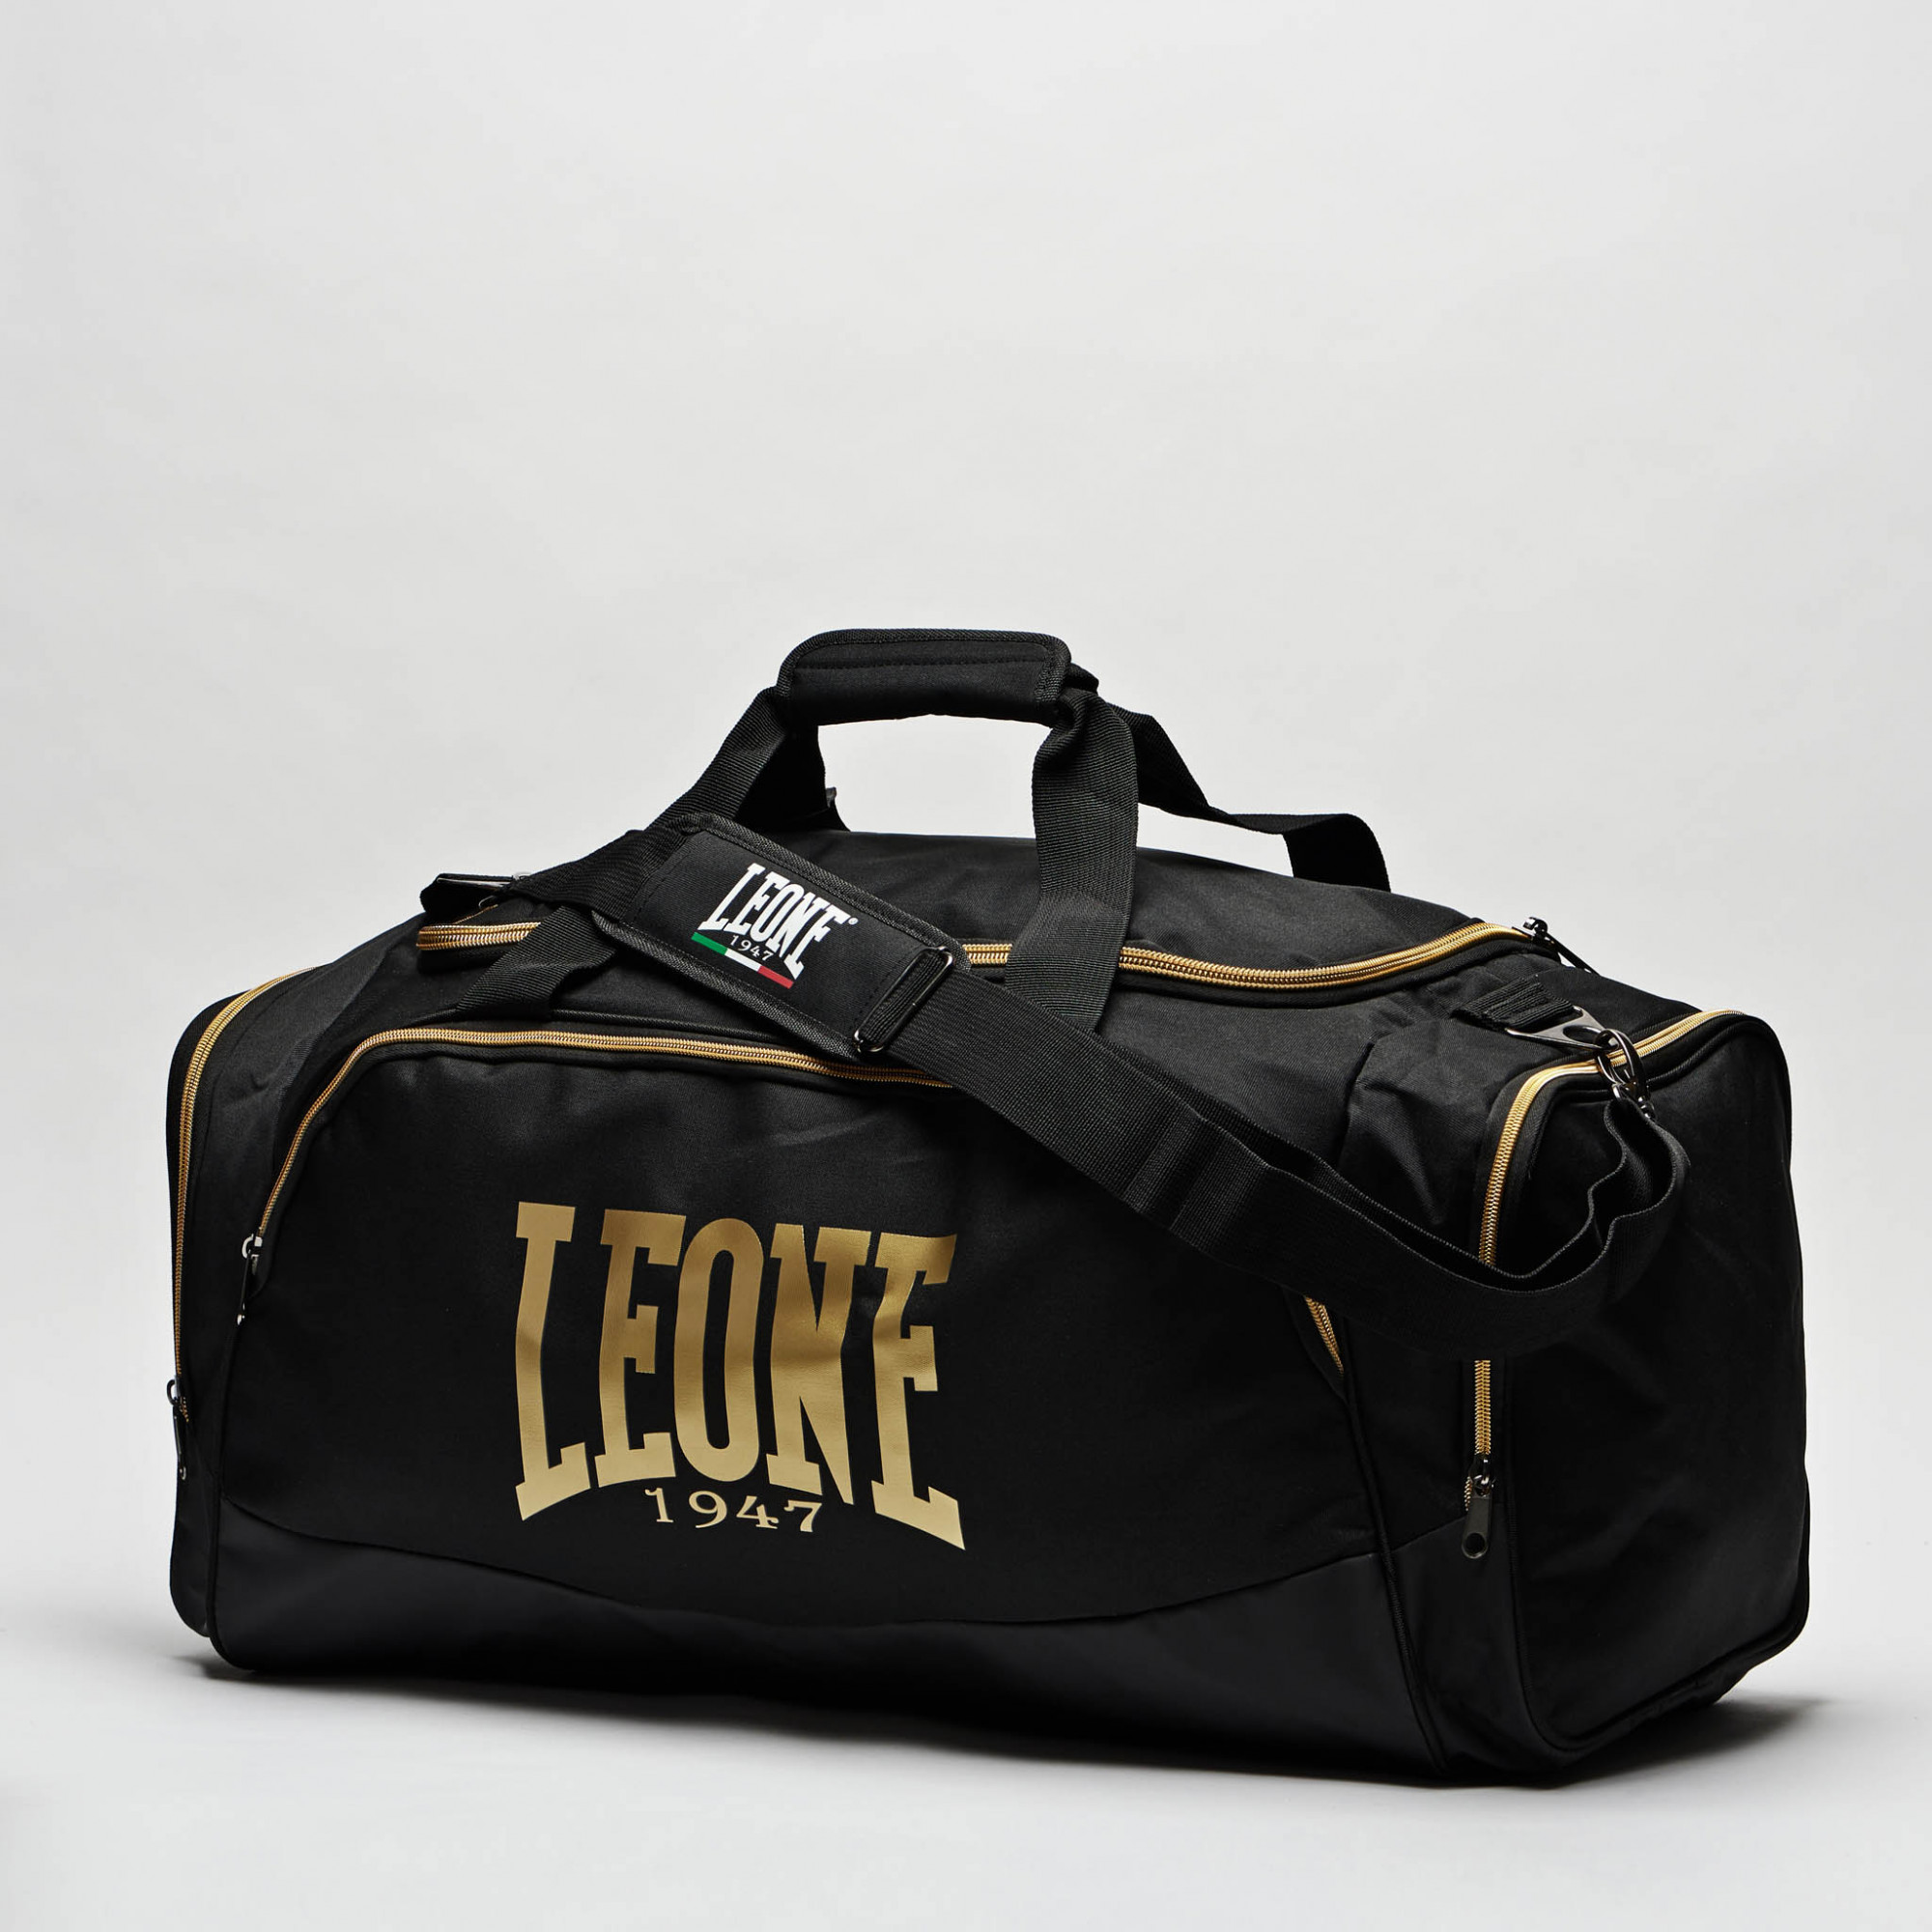 Sports bag backpack Leone AC908